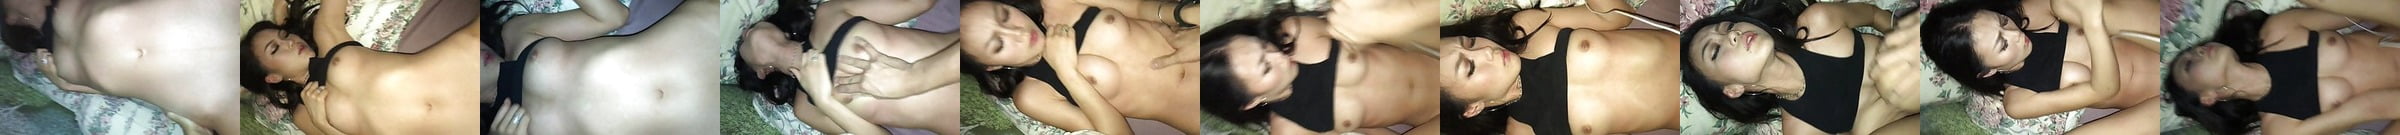 Korean Cute Girl Free Spankbang Porn Video E5 Xhamster